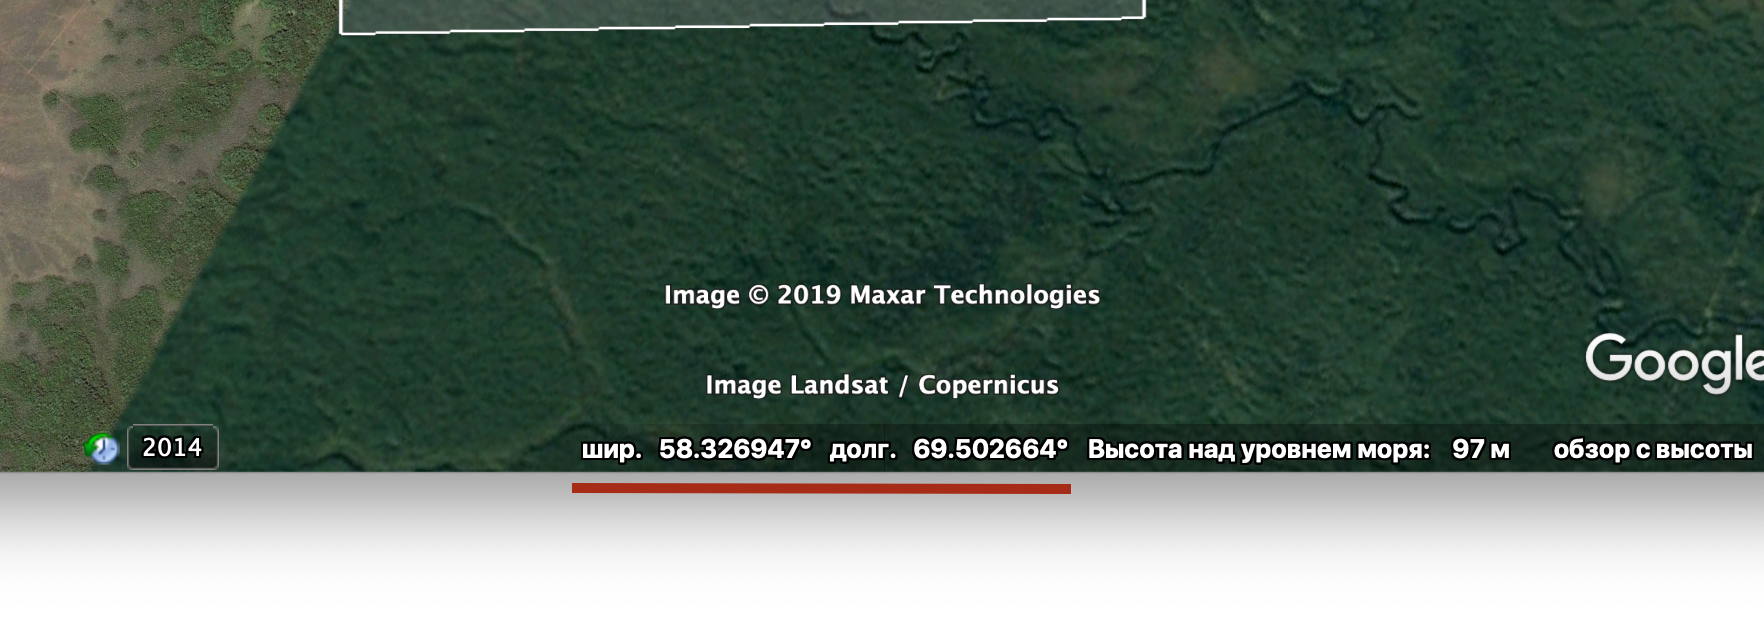 Google Earth Settings